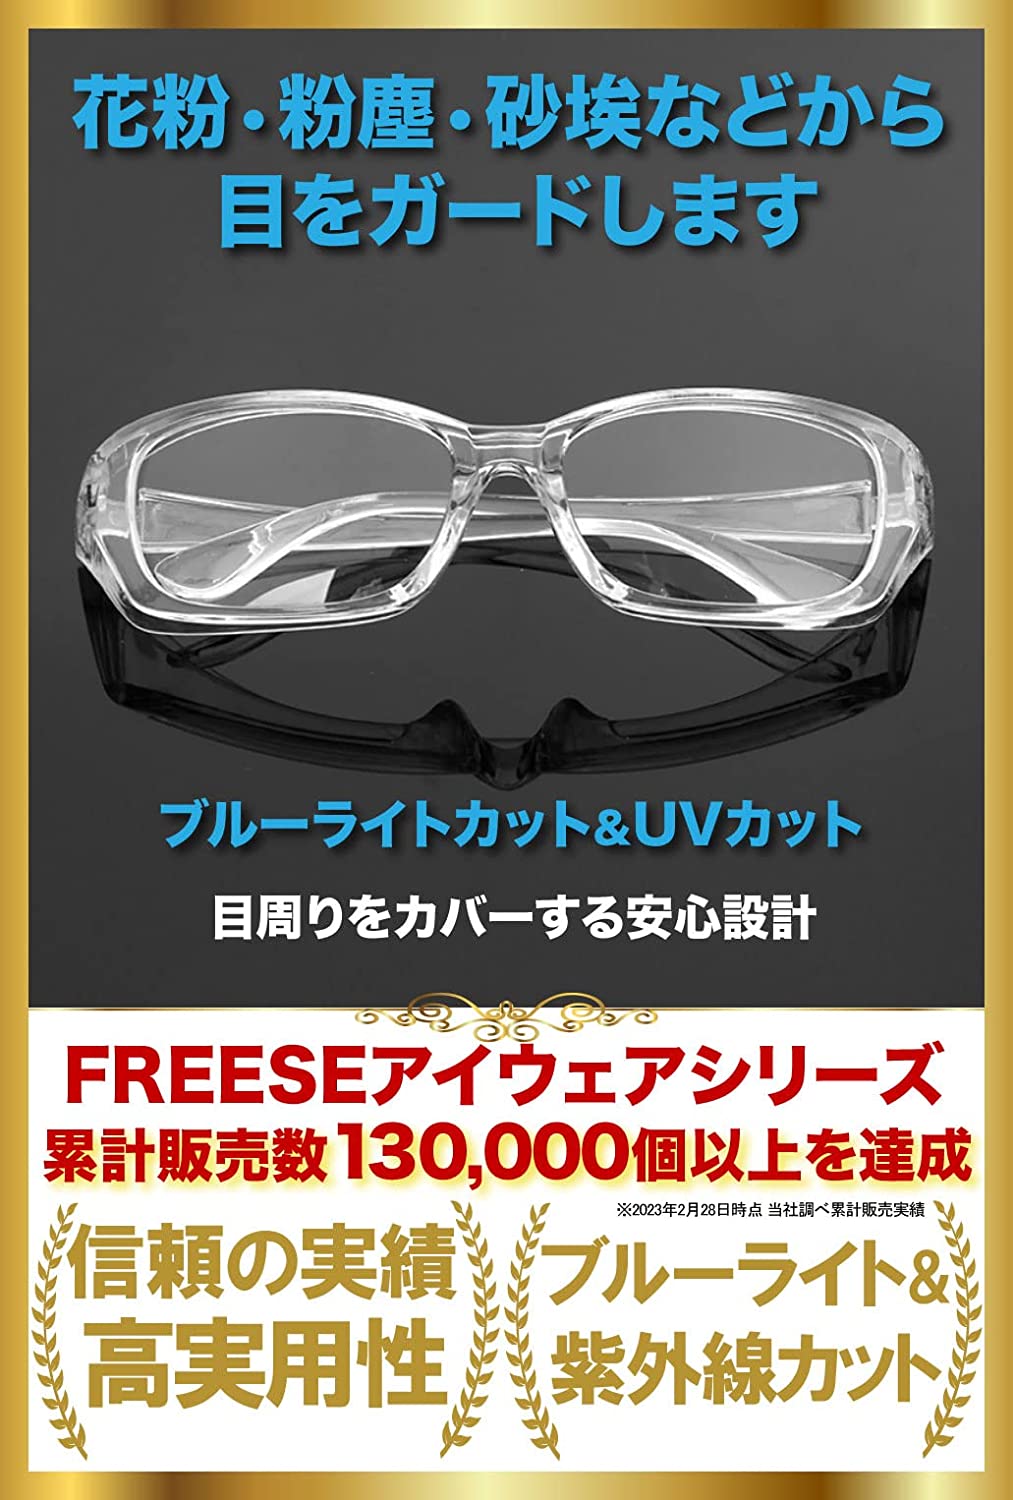  поллиноз меры очки пыльца защитные очки 3D цельный PC очки голубой свет cut UV cut замутненный . нет прозрачный 